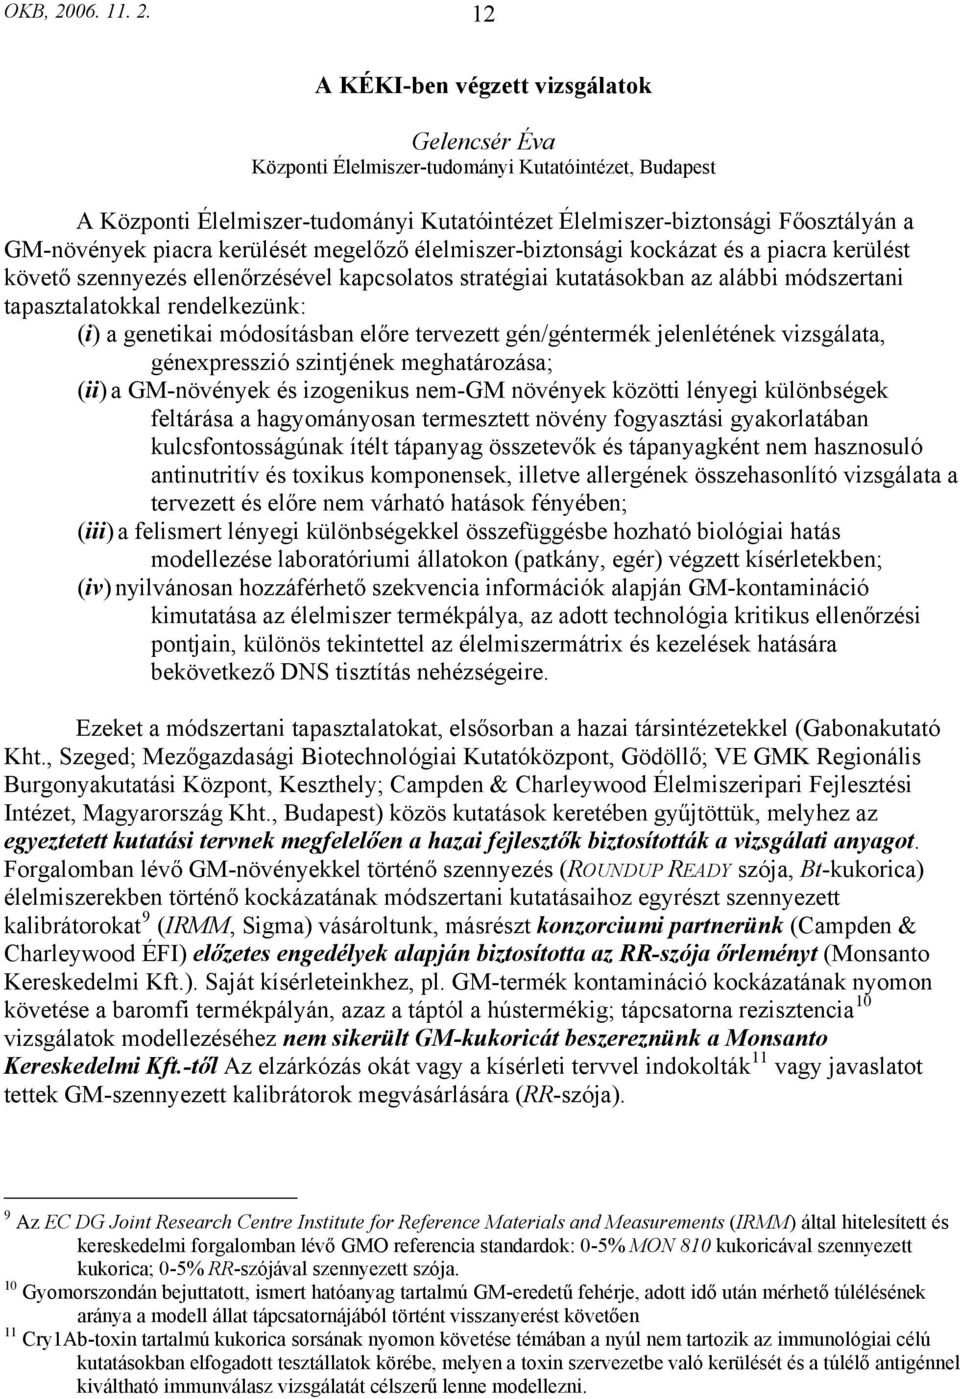 12 A KÉKI-ben végzett vizsgálatok Gelencsér Éva Központi Élelmiszer-tudományi Kutatóintézet, Budapest A Központi Élelmiszer-tudományi Kutatóintézet Élelmiszer-biztonsági Főosztályán a GM-növények